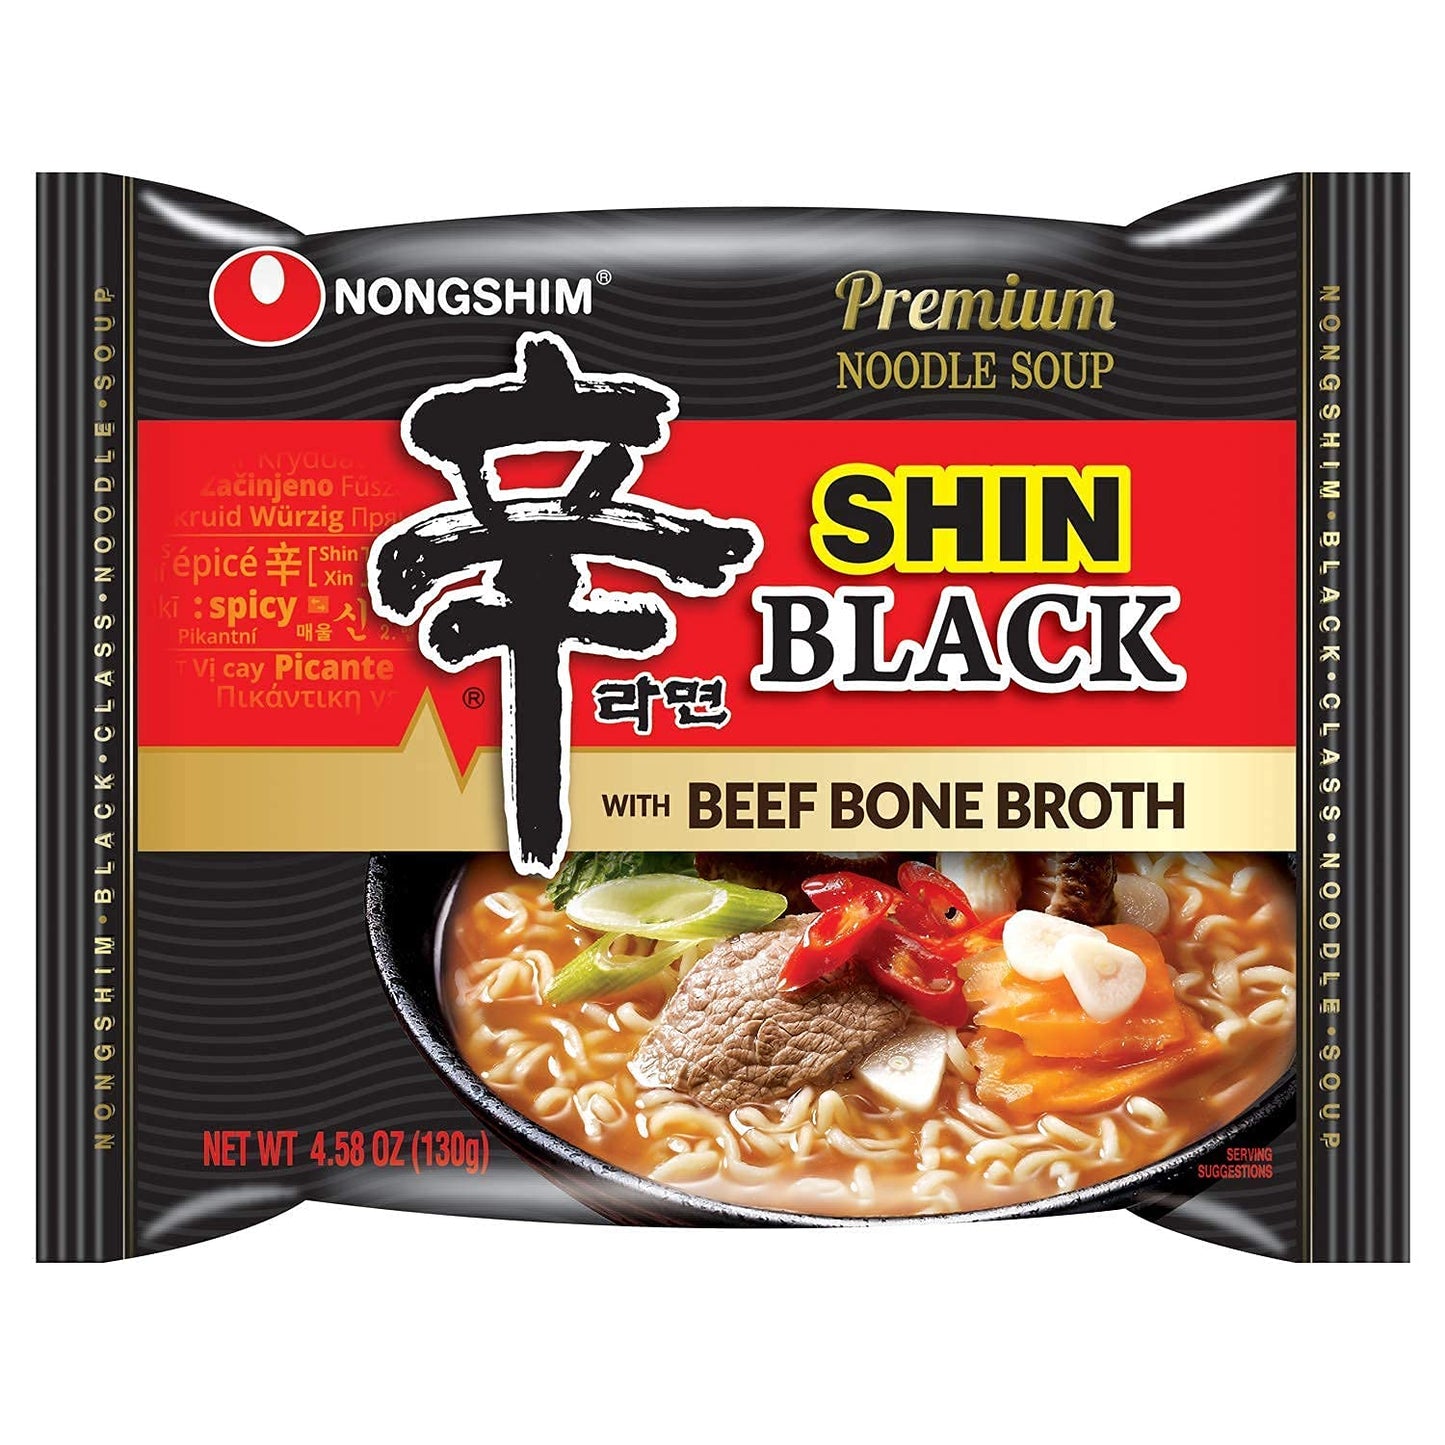 Nongshim Shin Black Ramen Premium Noodle Soup (16 Pack)